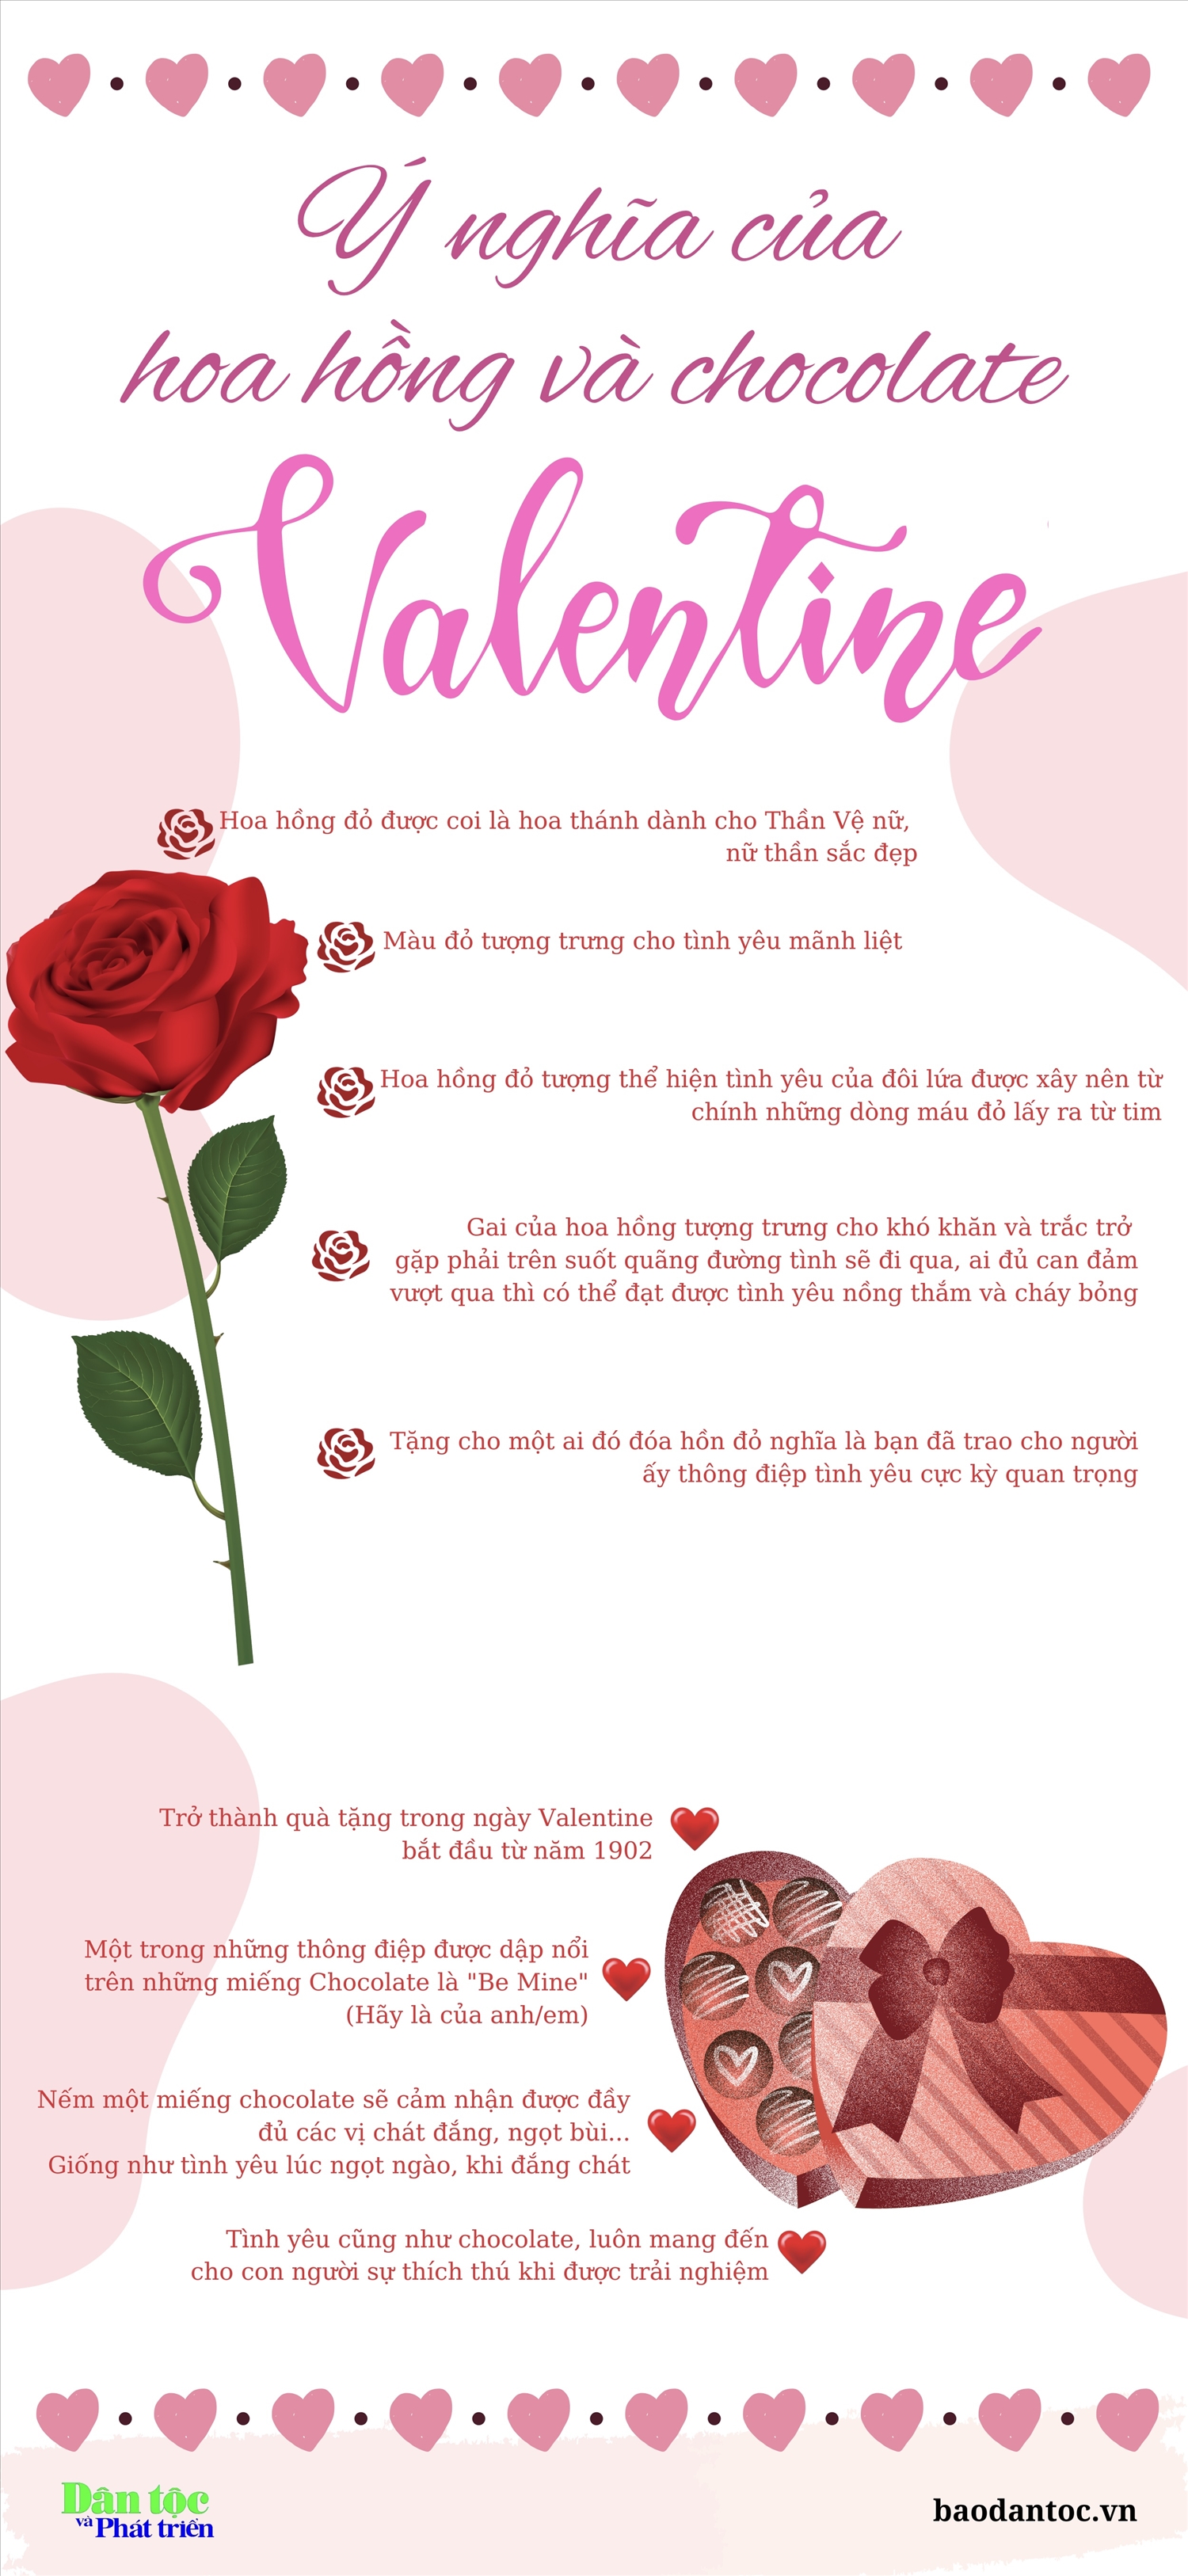 (inforgraphic) Ý nghĩa của hoa hồng và chocolate Ngày Valentine